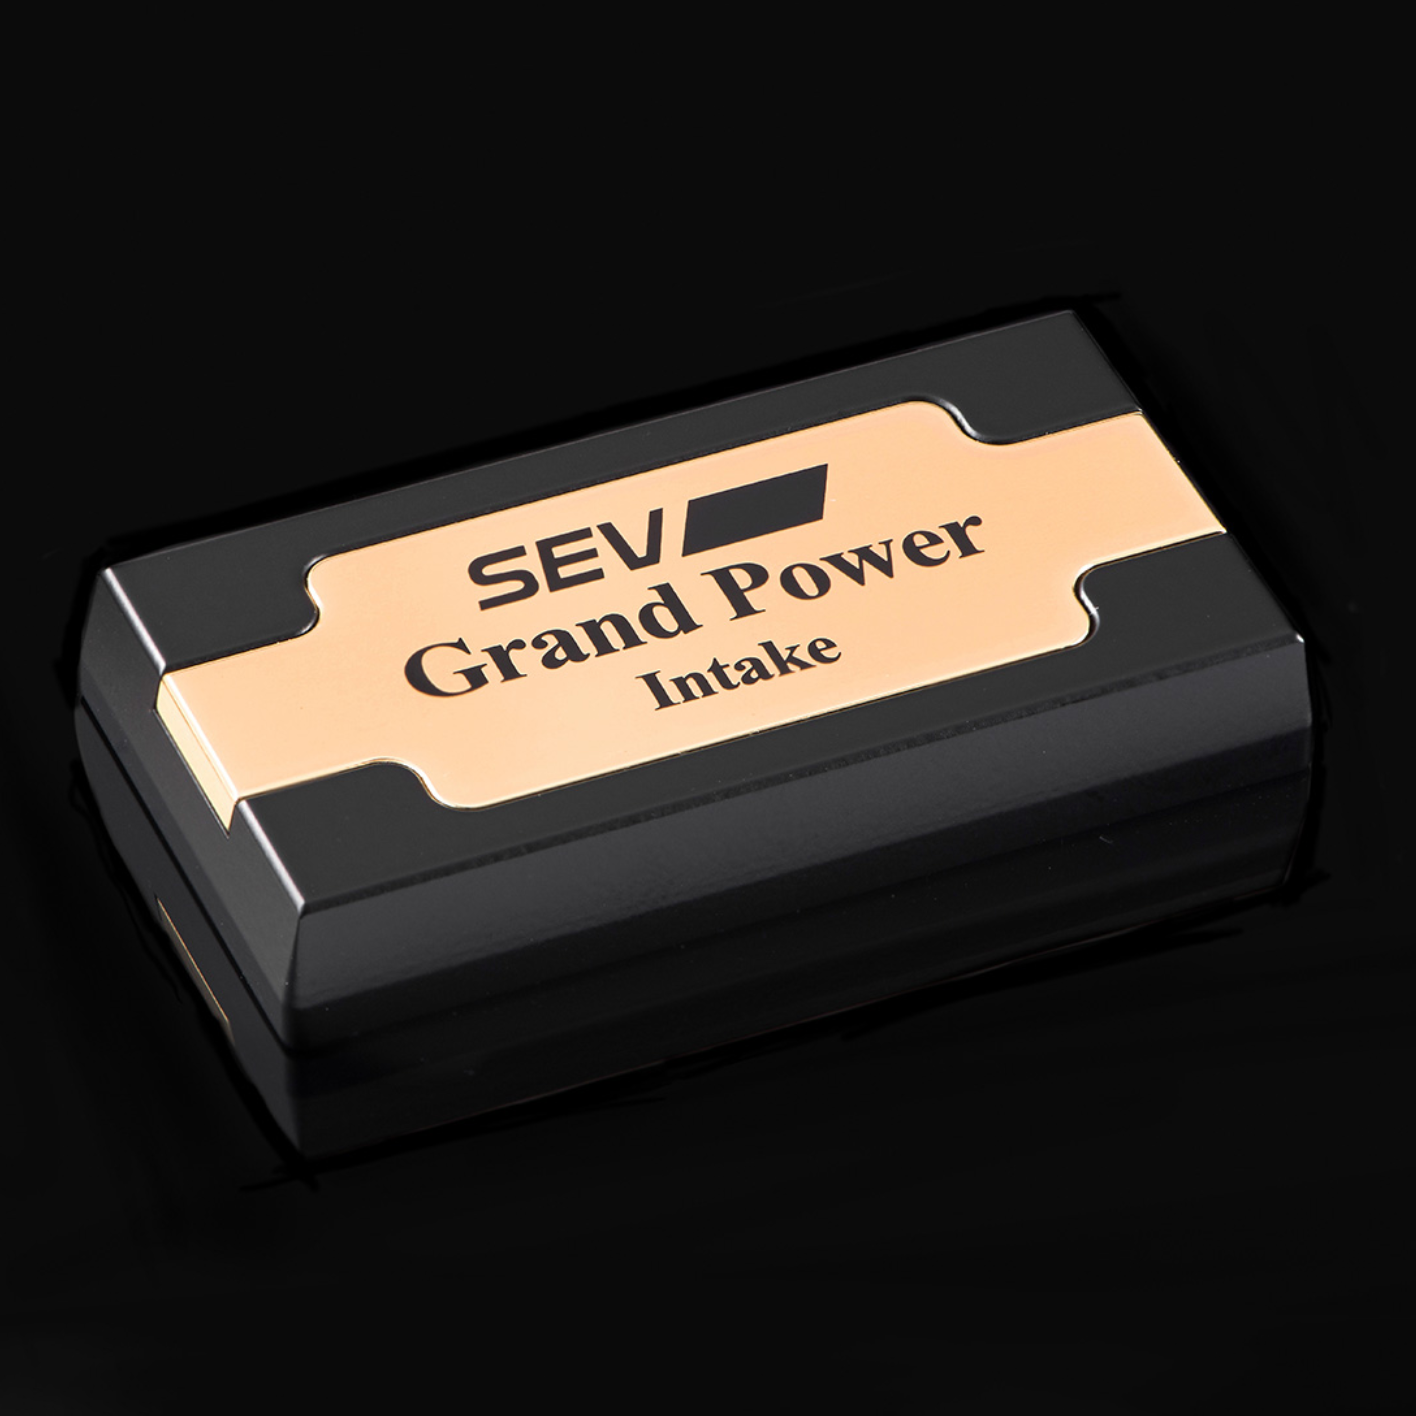 SEV Grand Power グランドパワー セット No1